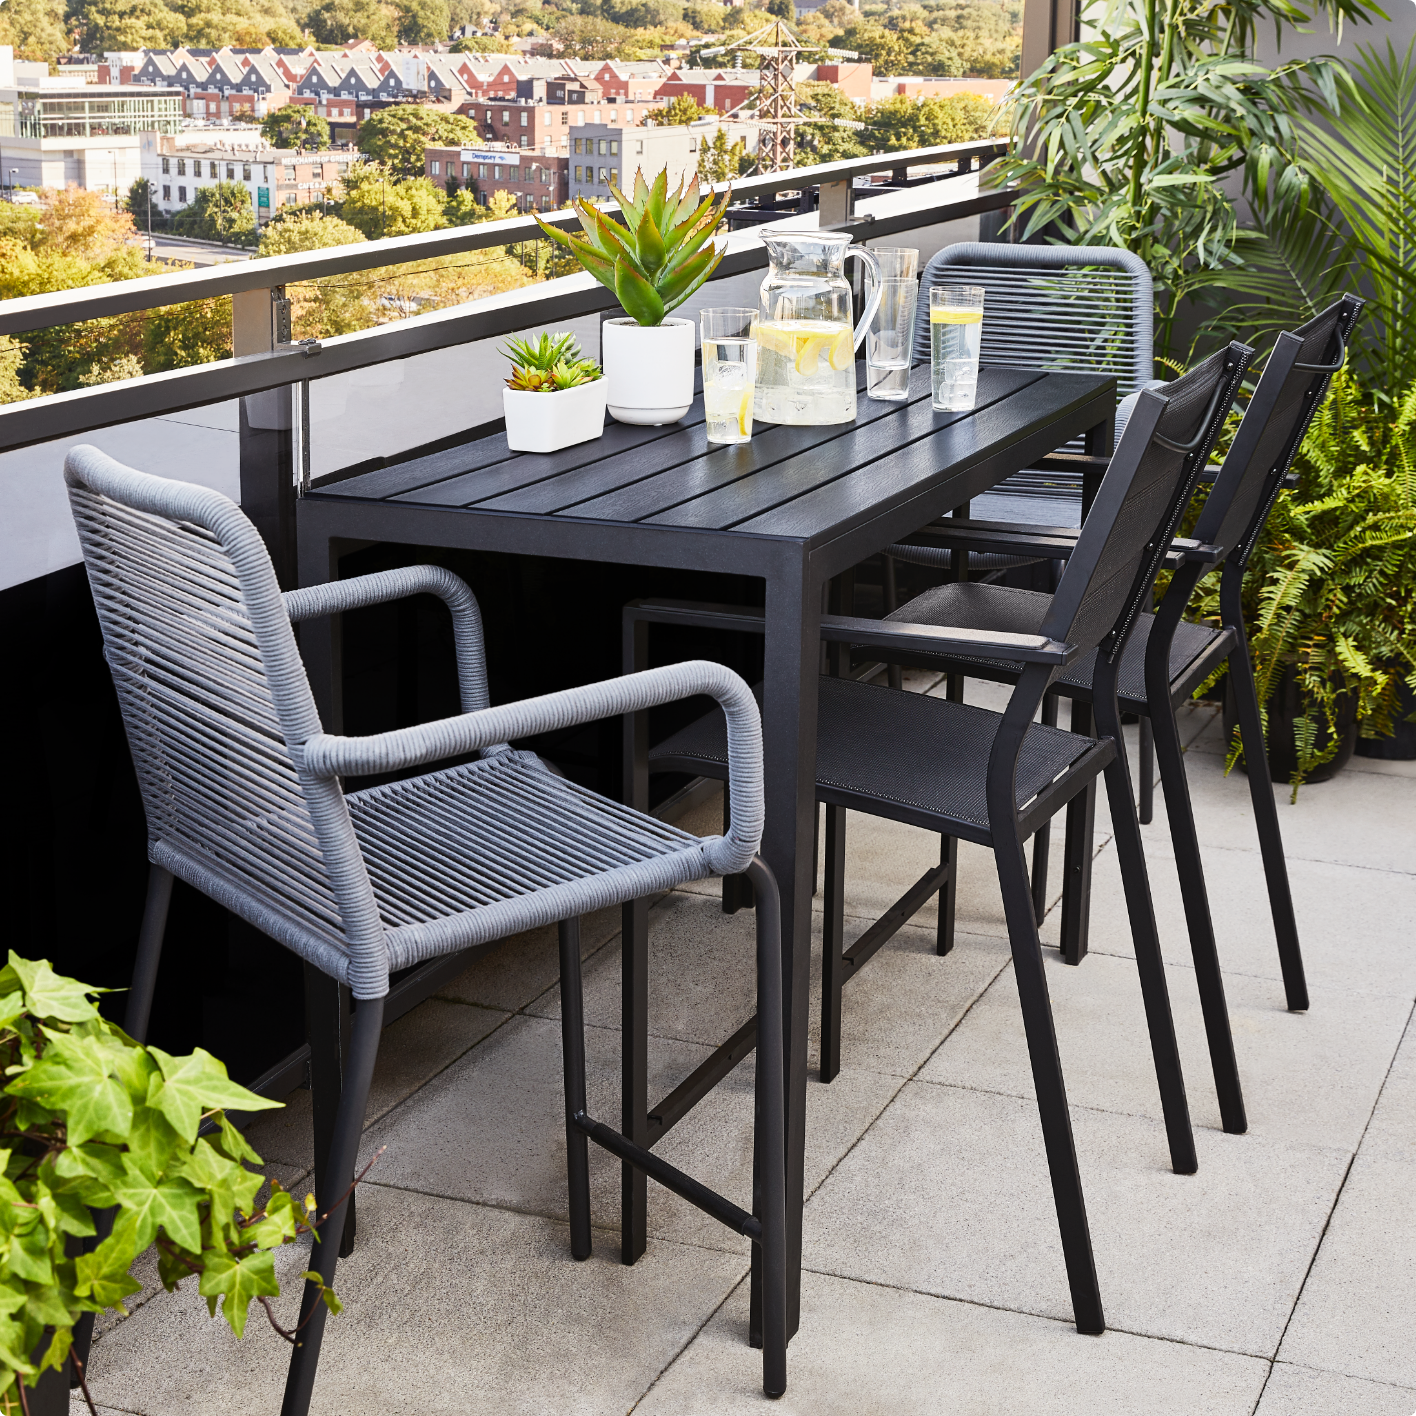 Une petite table à manger extérieure noire sur un balcon, quatre chaises grises en osier et des verres d’eau au citron placés sur la table. 